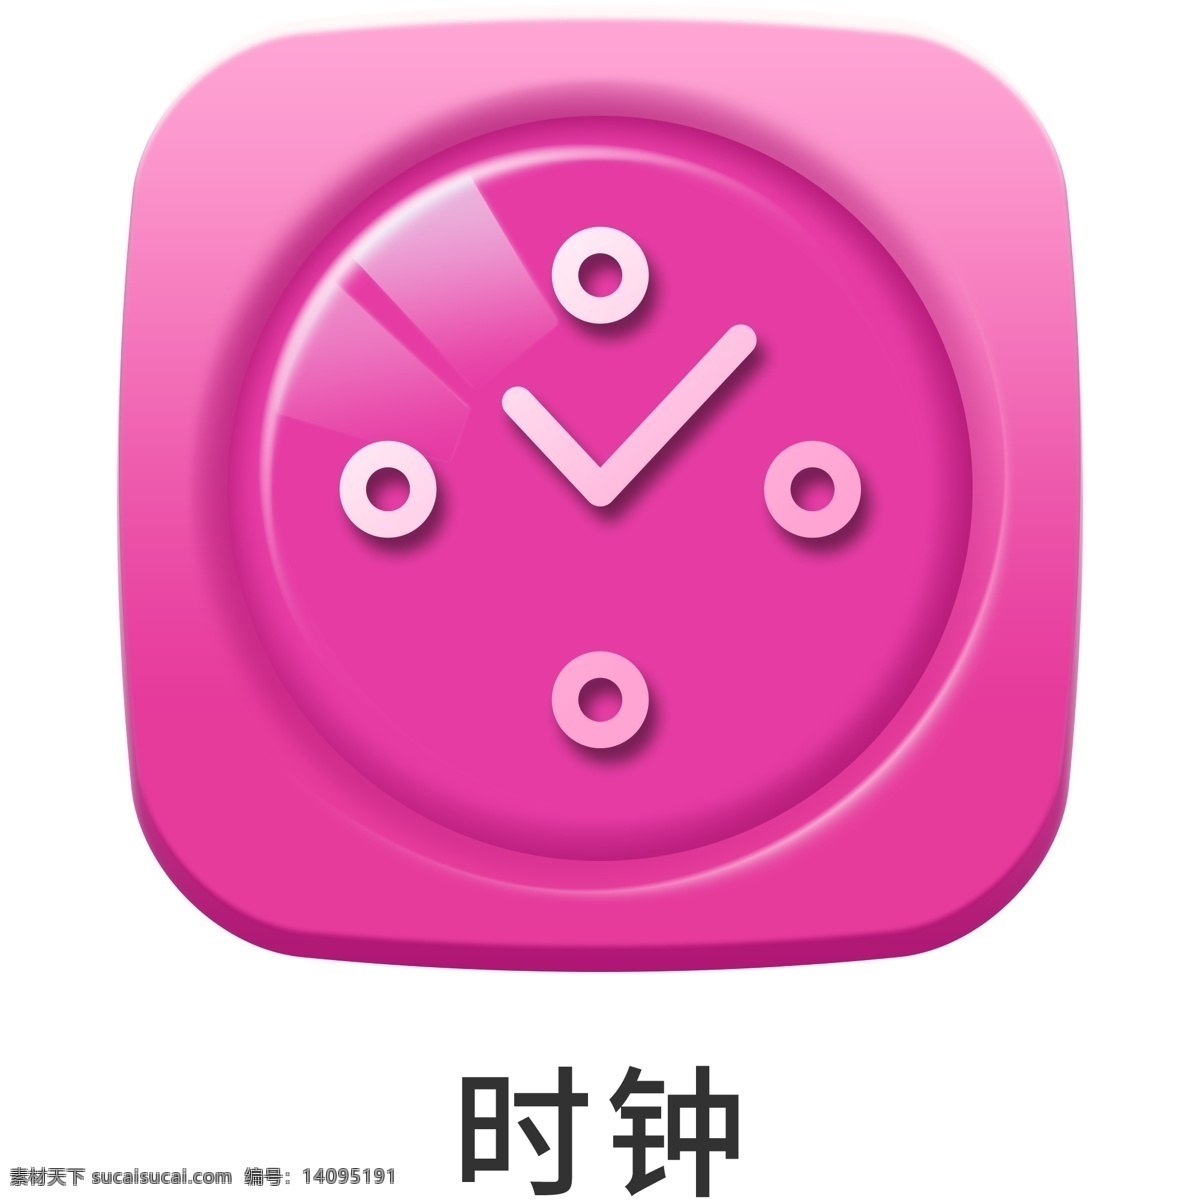 手机 主题 多彩 浮雕 时钟 icon 元素 ui图标 彩色 图标 设计元素 手机主题 图标按钮